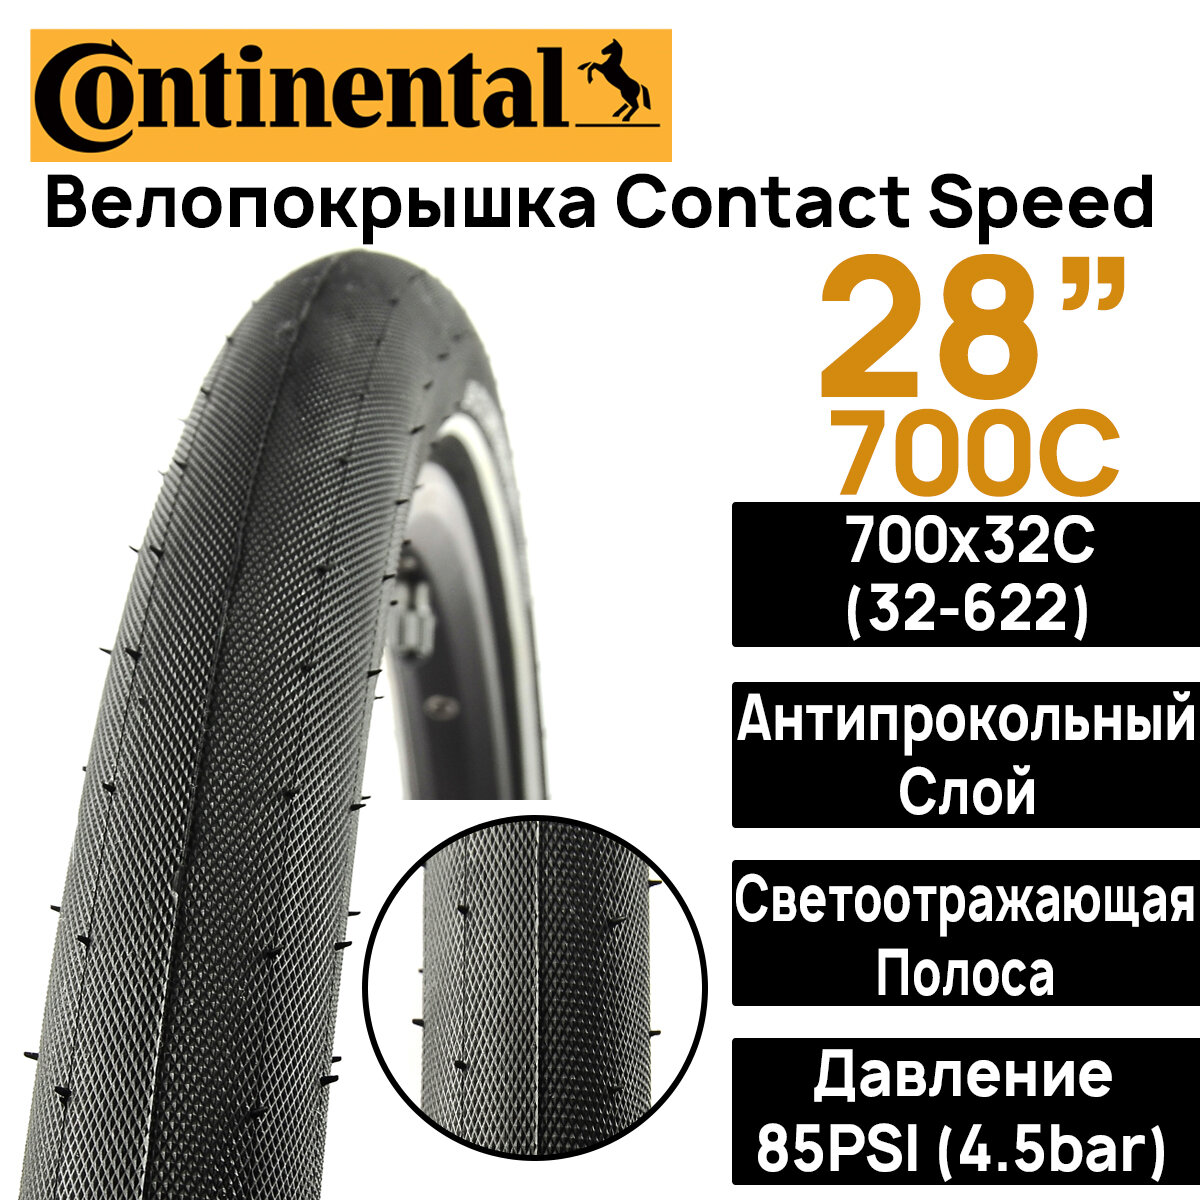 Покрышка для велосипеда Continental Contact Speed 28" (700x32), MAX BAR 4.5, PSI 85, жесткий корд, антипрокольный слой, светоотражающая полоса